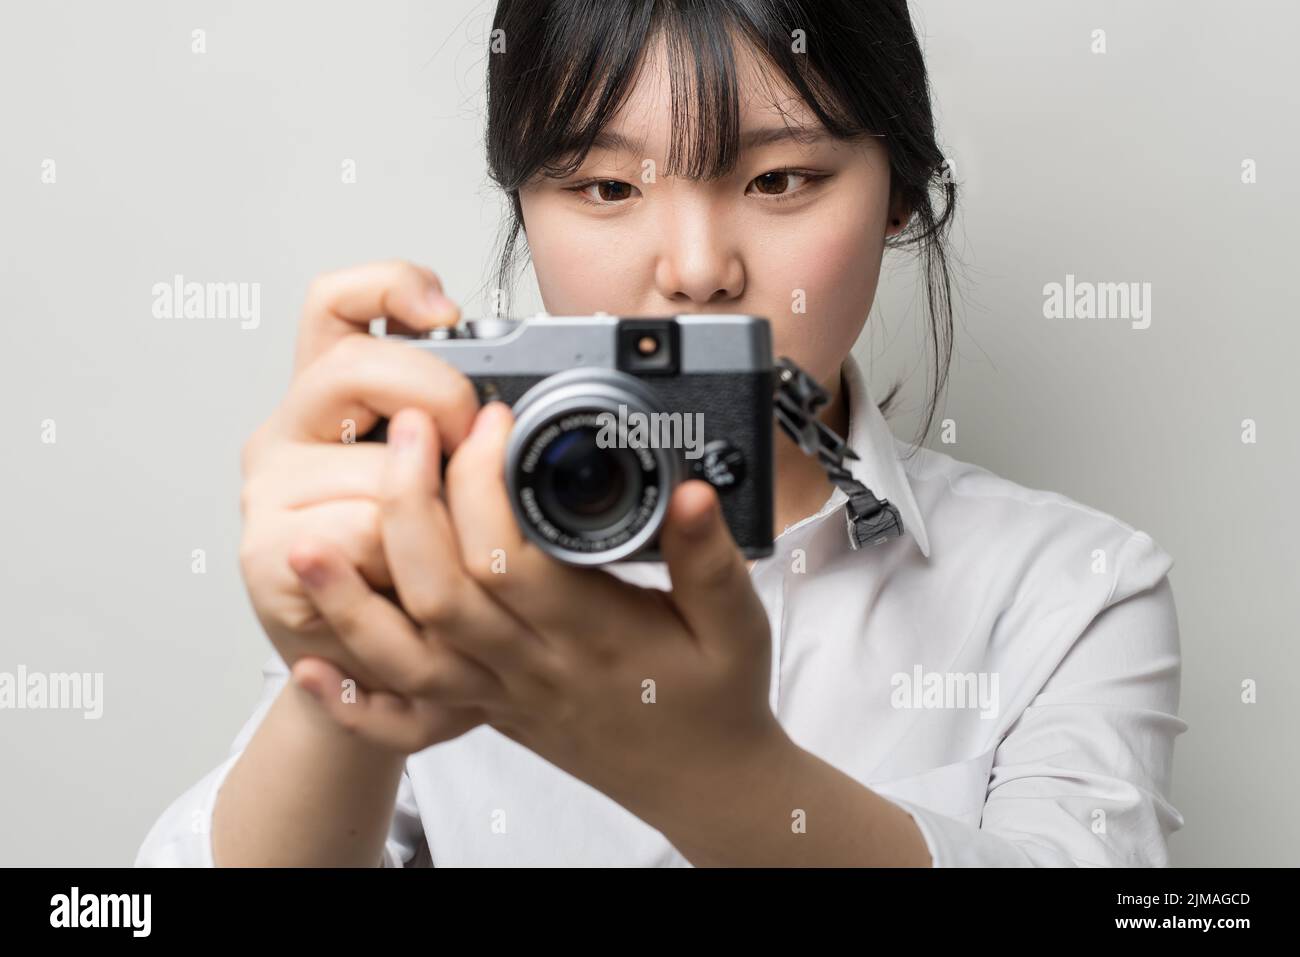 Weibliche Hand hält modernen Kamera (spiegellose Kamera). Kamera in der Hand. Die Augen der Menschen im Mittelpunkt Stockfoto